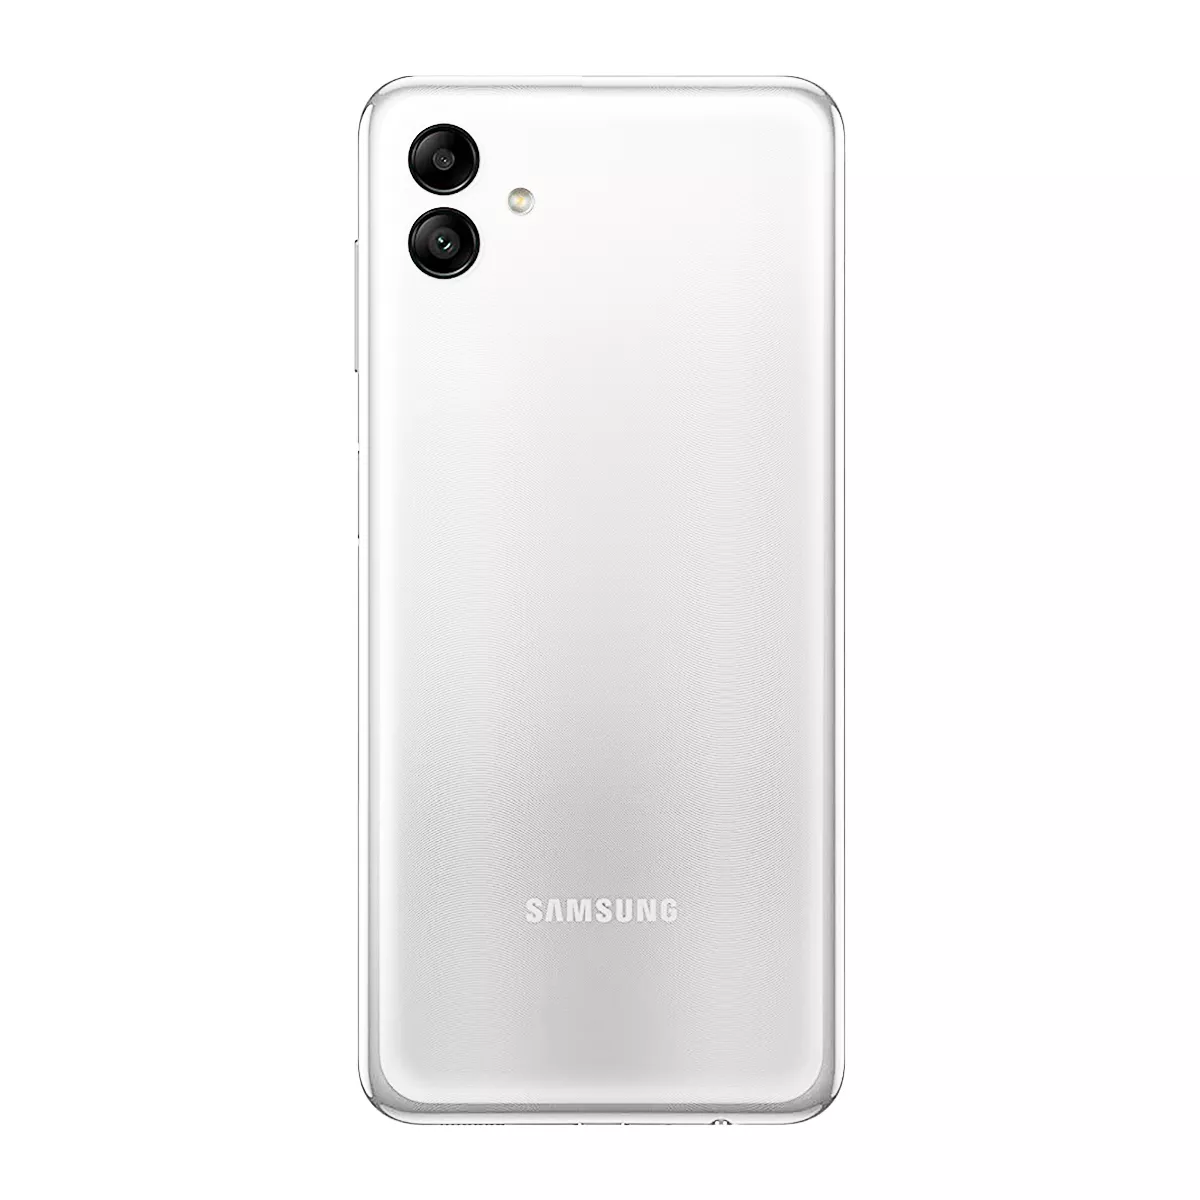 Buy Samsung Galaxy A04 (64GB) in Copper